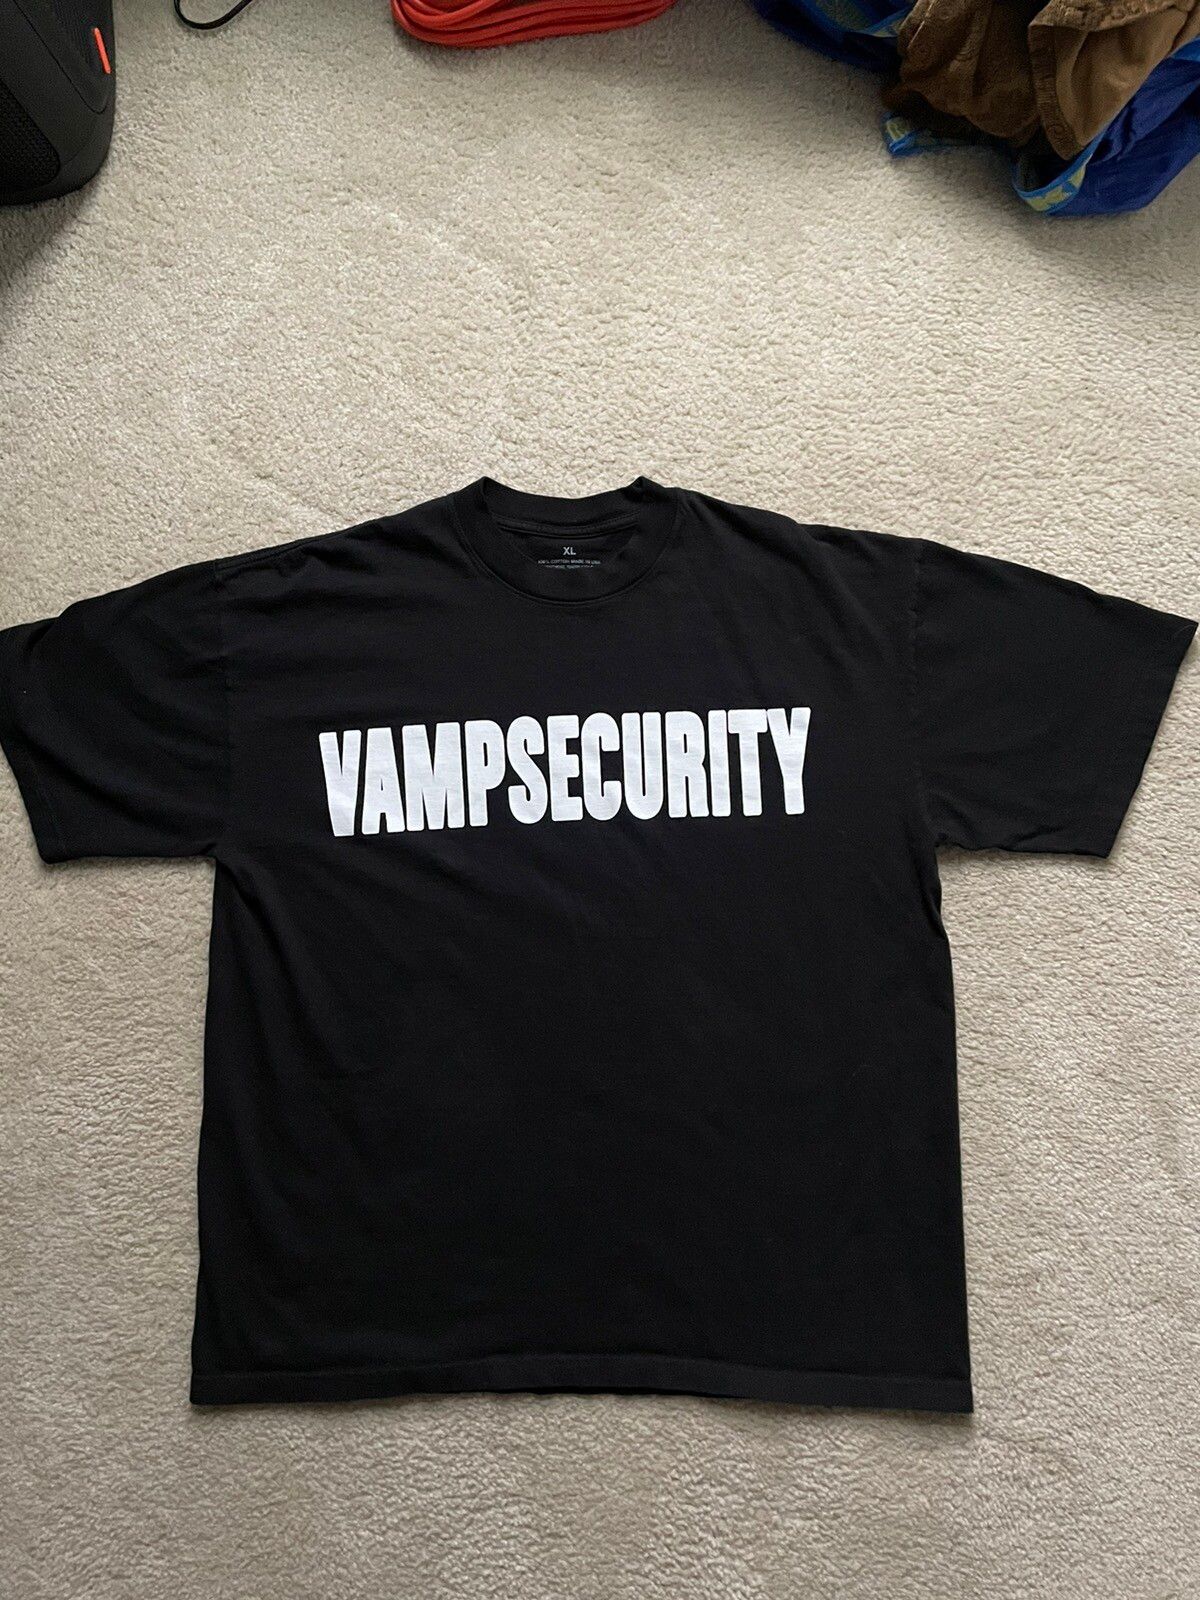 Tour Tee Playboi Carti Narcissist Tour Vamp Security Shirt | Grailed